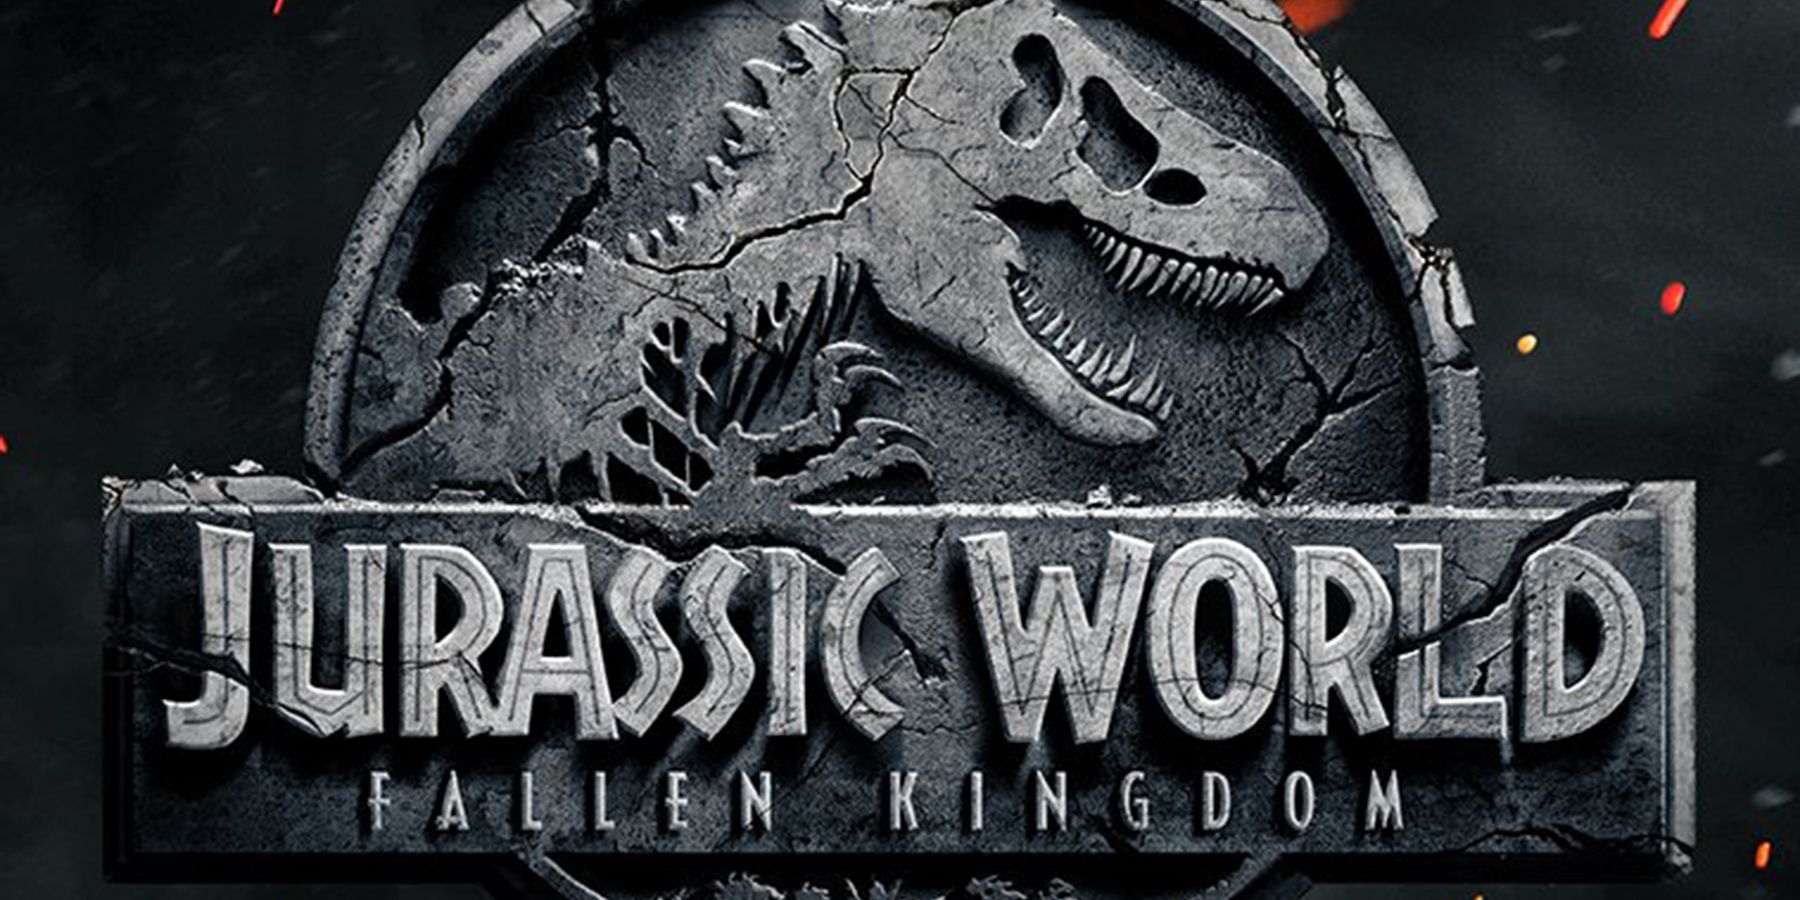 Jurassic World: Fallen Kingdom (2018) Movie Information & Trailers